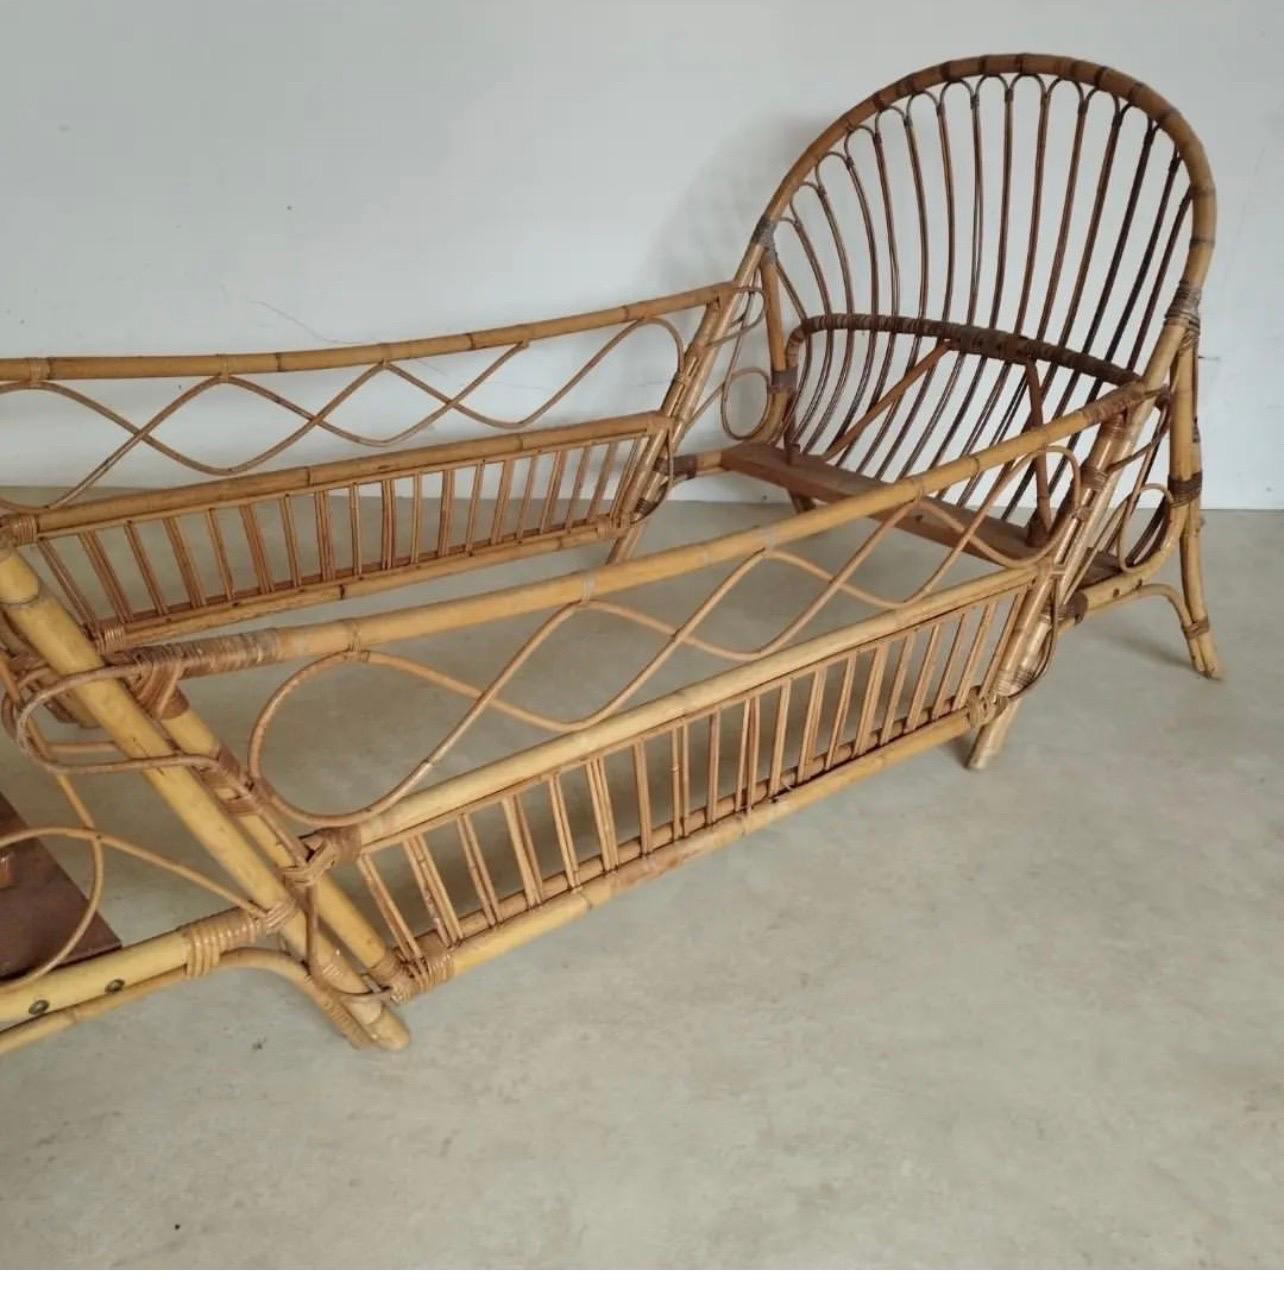 Ein Bett oder eine Liege aus Bambus 